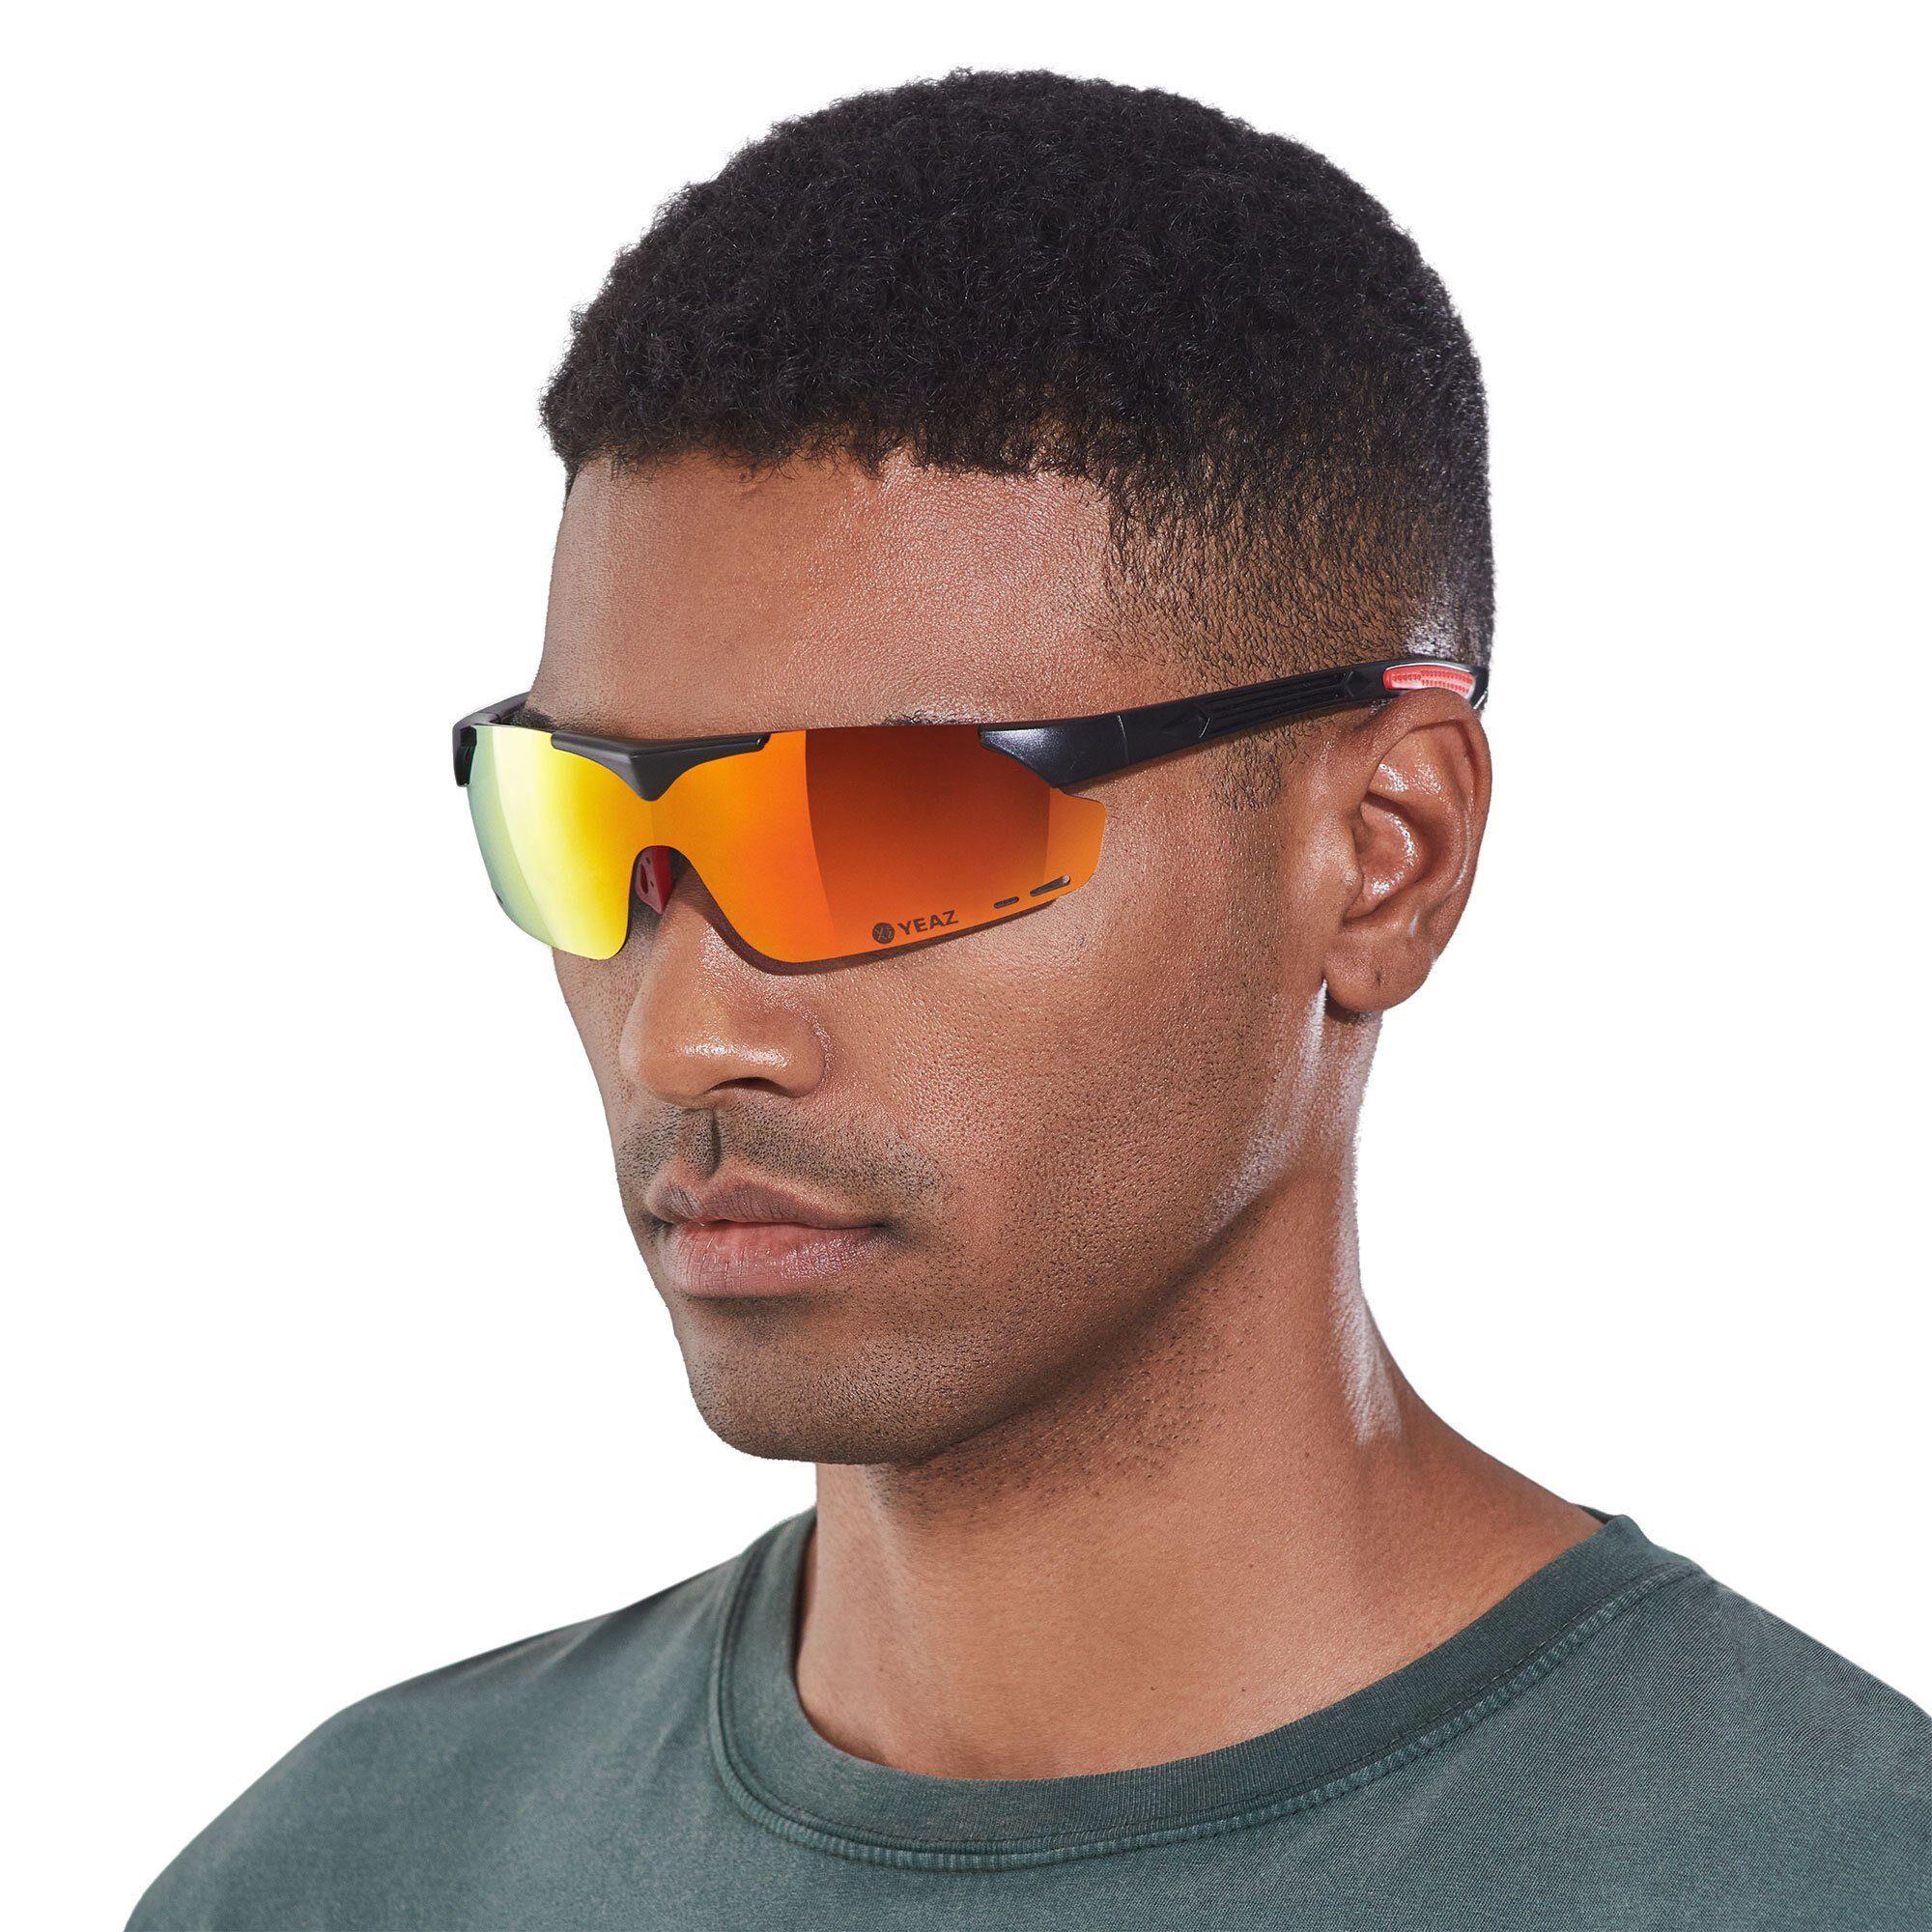 YEAZ Sportbrille SUNUP set magnet-sport-sonnenbrille, Sport-Sonnenbrille mit Magnetsystem